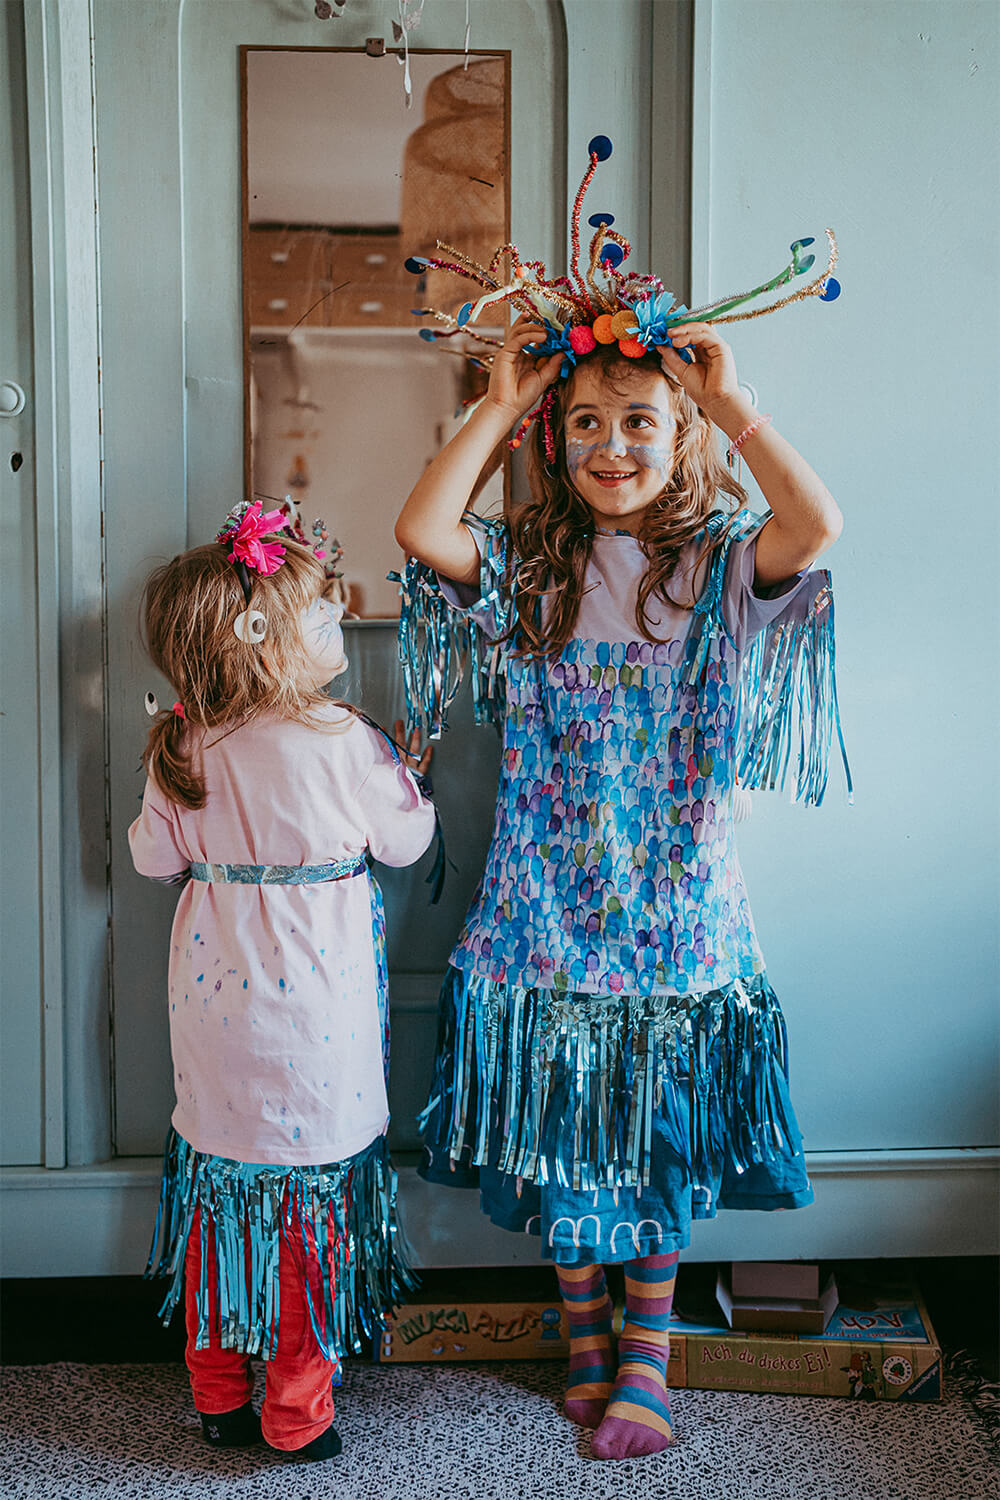 Kinderkostüme selber machen: Kinder basteln fantasievolle Kostüme für Fasching, Karneval und Halloween